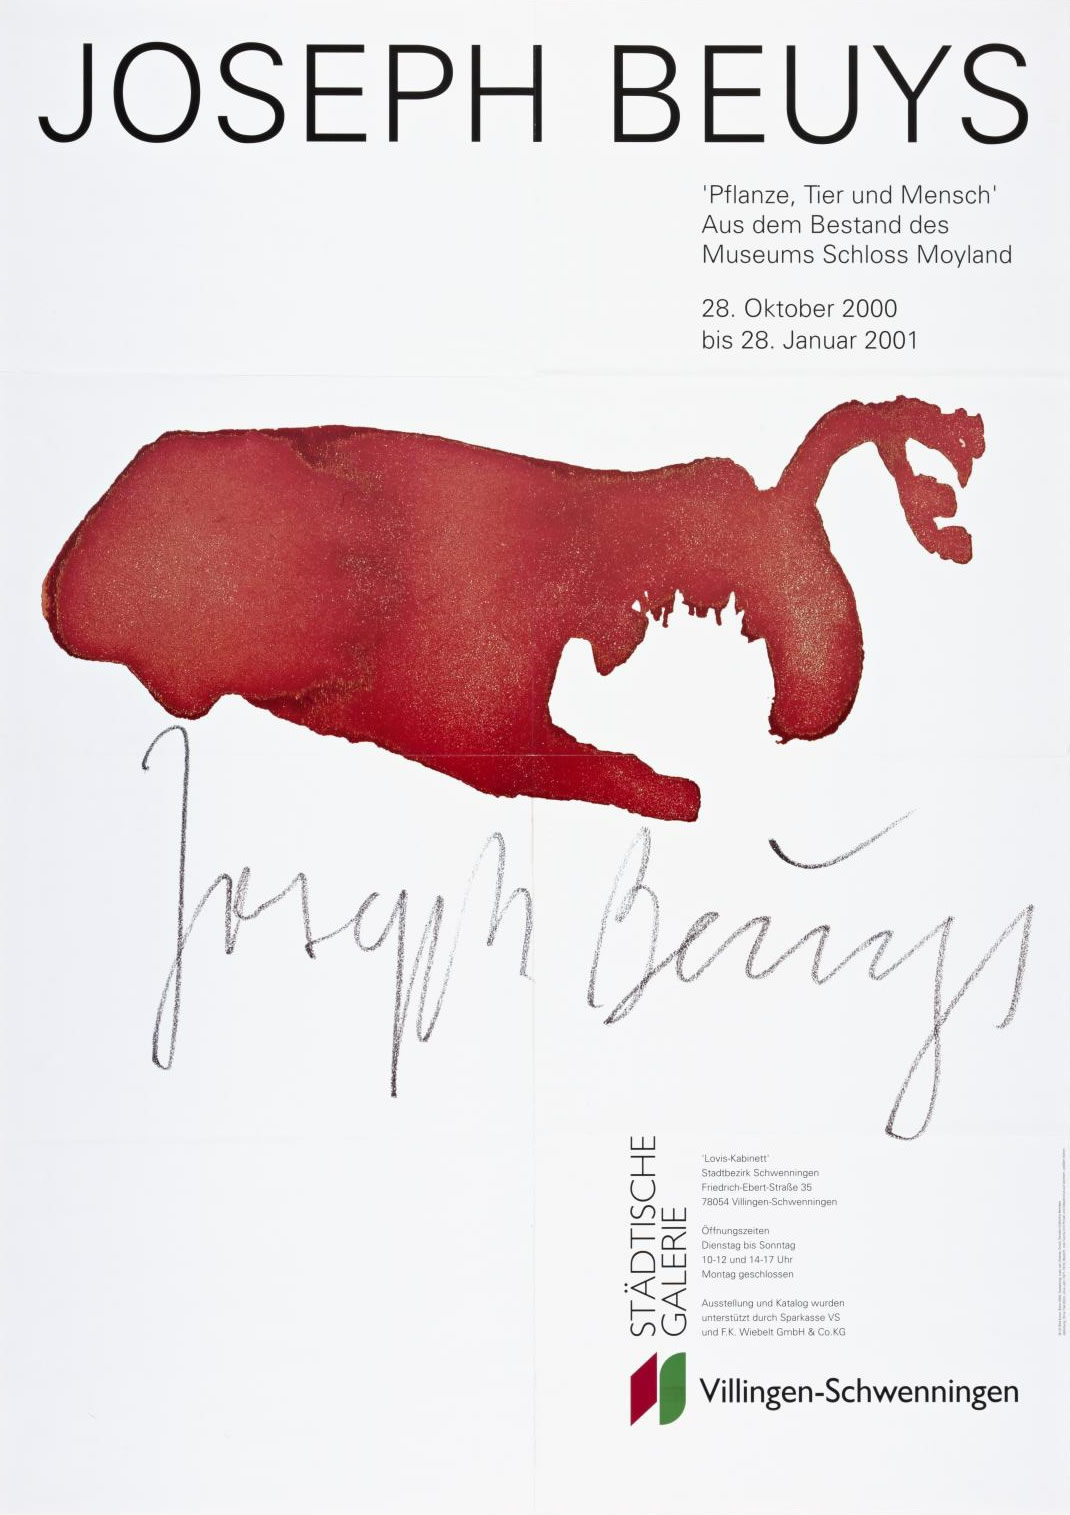 Joseph Beuys: ‘Pflanze, Tier und Mensch’. Städtische Galerie, Villingen-Schwenningen. 2001